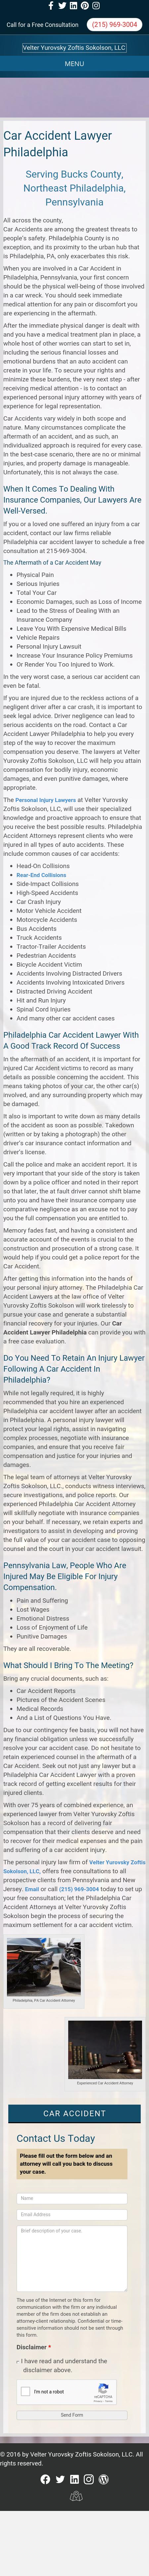 Velter Yurovsky Zoftis Sokolson, LLC - Southampton PA Lawyers